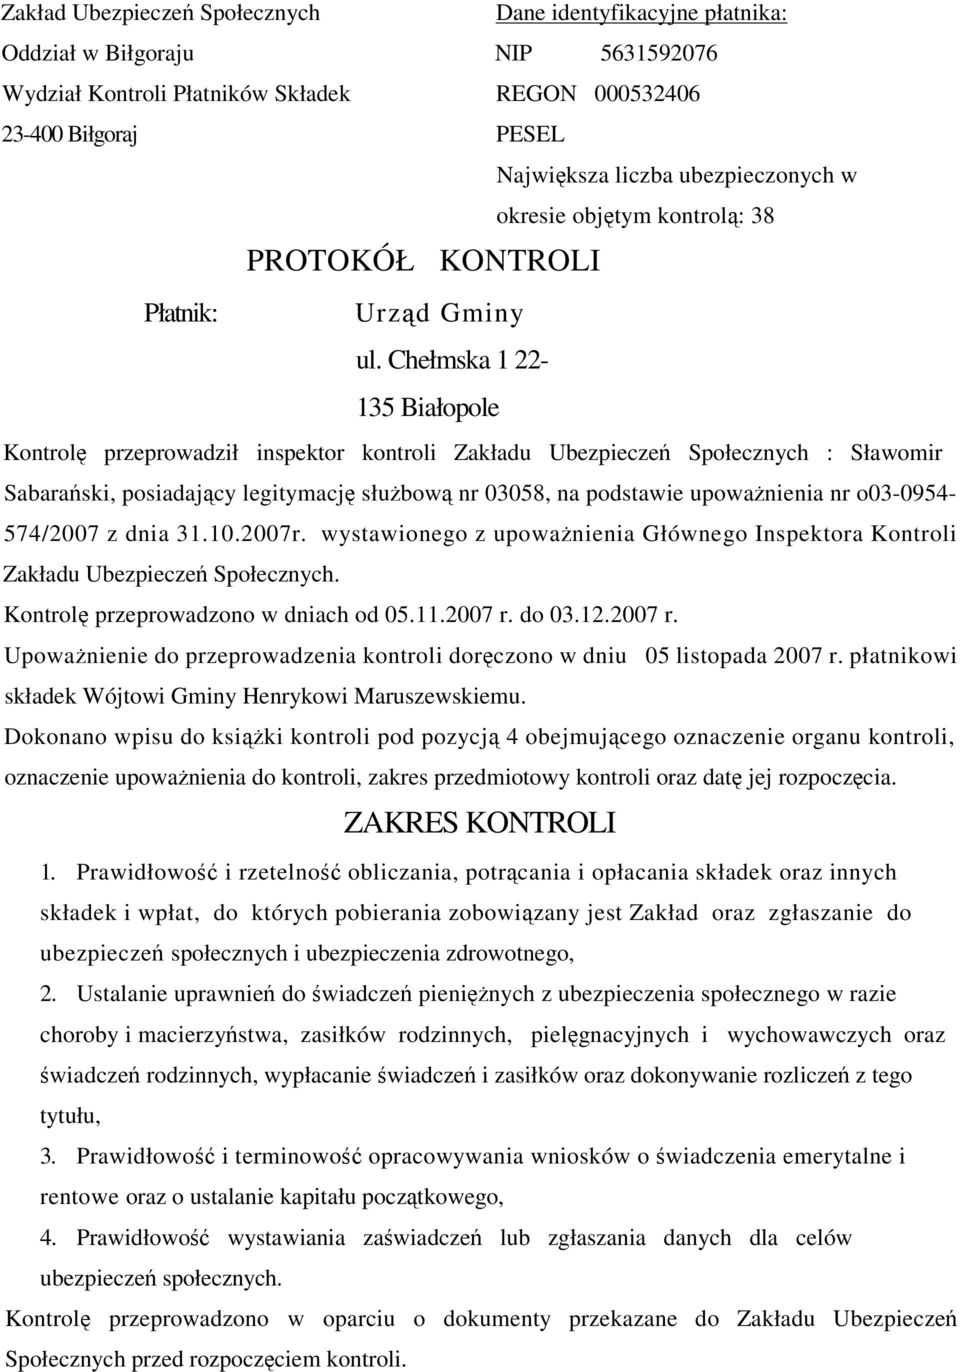 Chełmska 1 22-135 Białopole Kontrol przeprowadził inspektor kontroli Zakładu Ubezpiecze Społecznych : Sławomir Sabaraski, posiadajcy legitymacj słubow nr 03058, na podstawie upowanienia nr o03-0954-